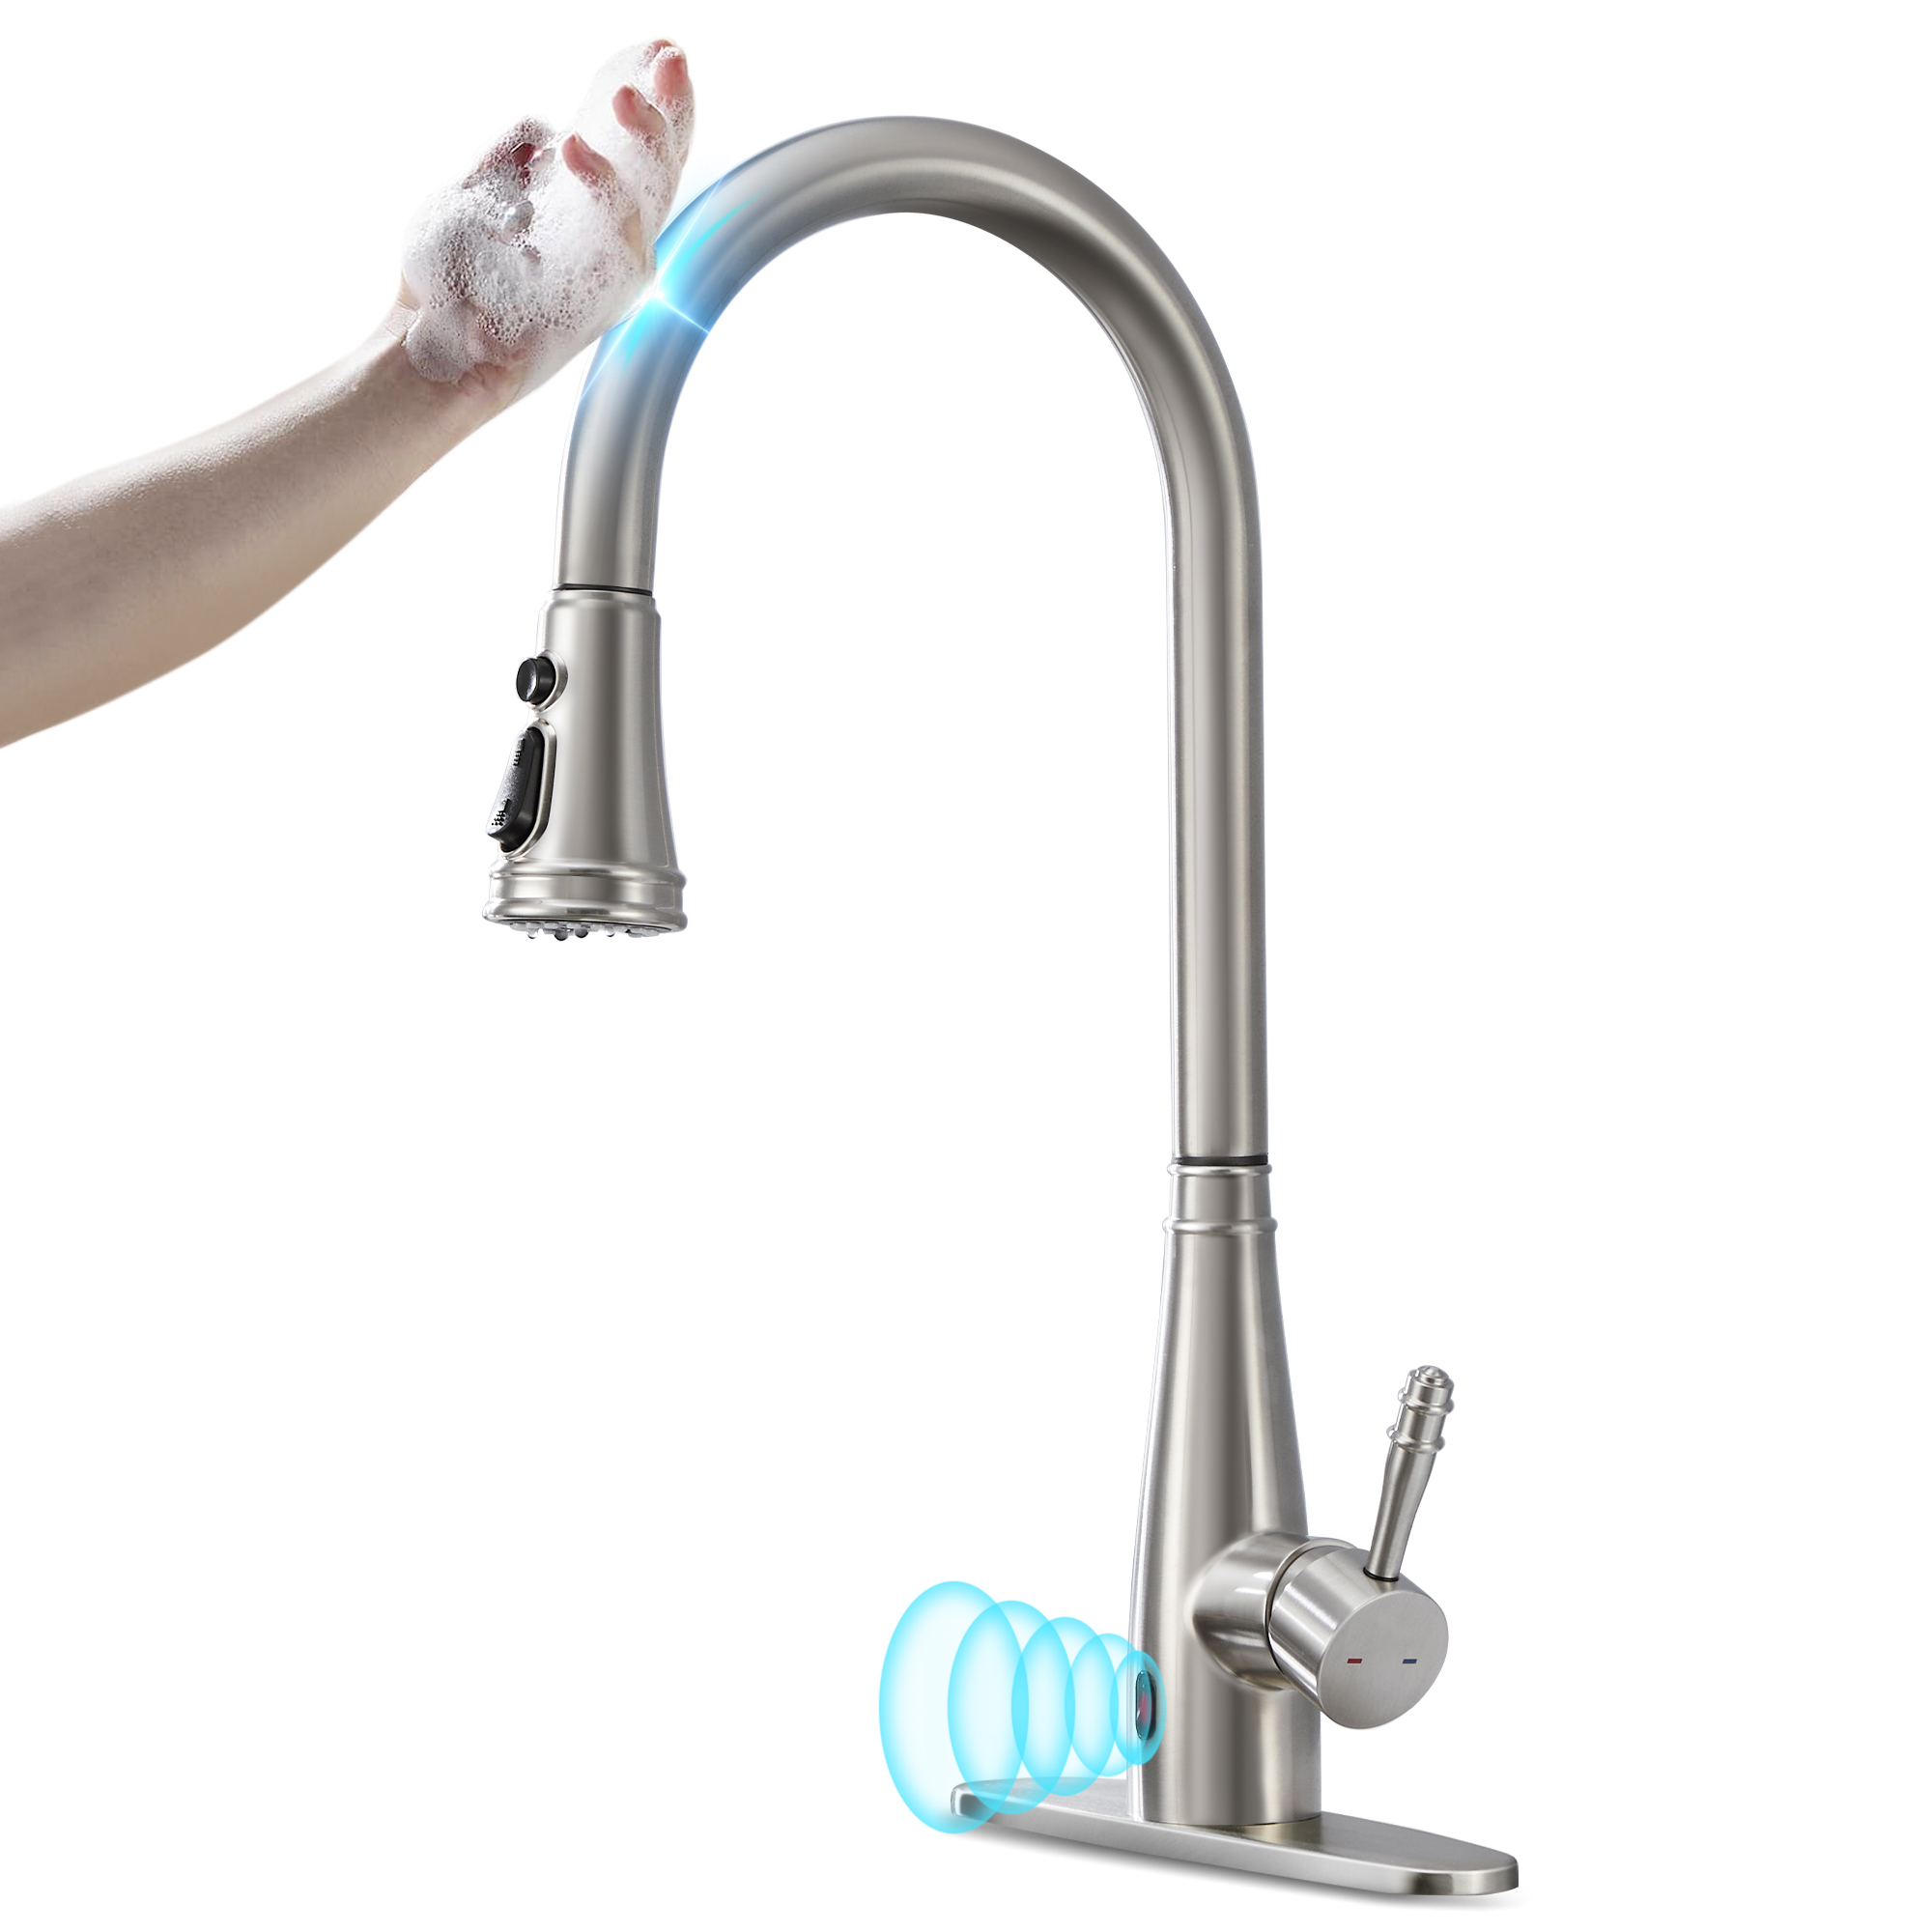 Sensor kitchen faucet